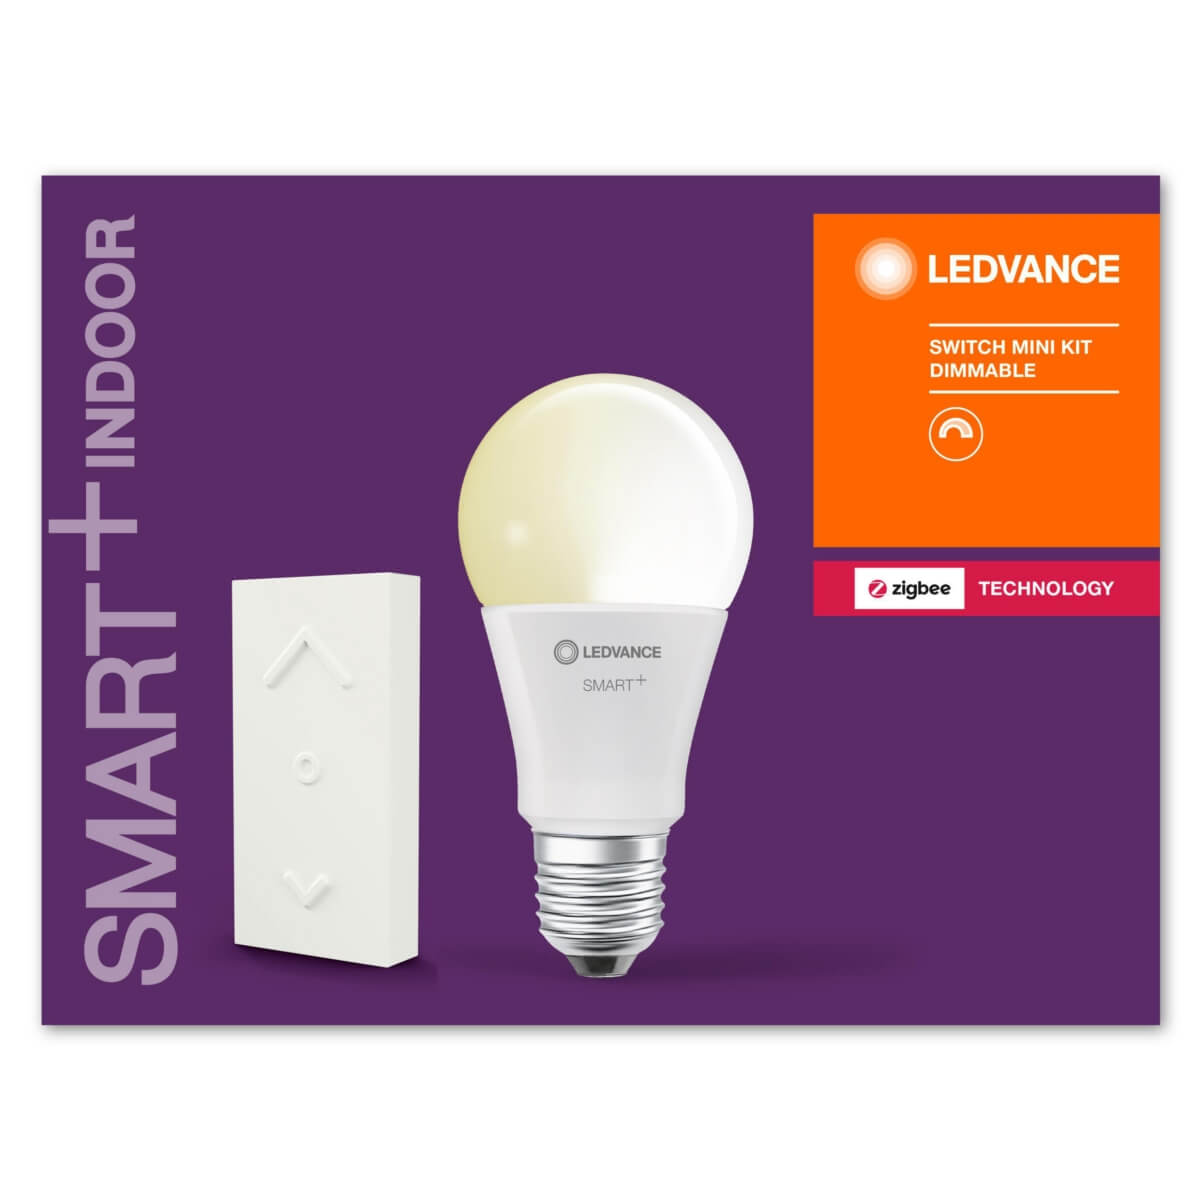 LED Lampe wie 60watt dimmbar mit Switch Mini LEDVANCE SMART